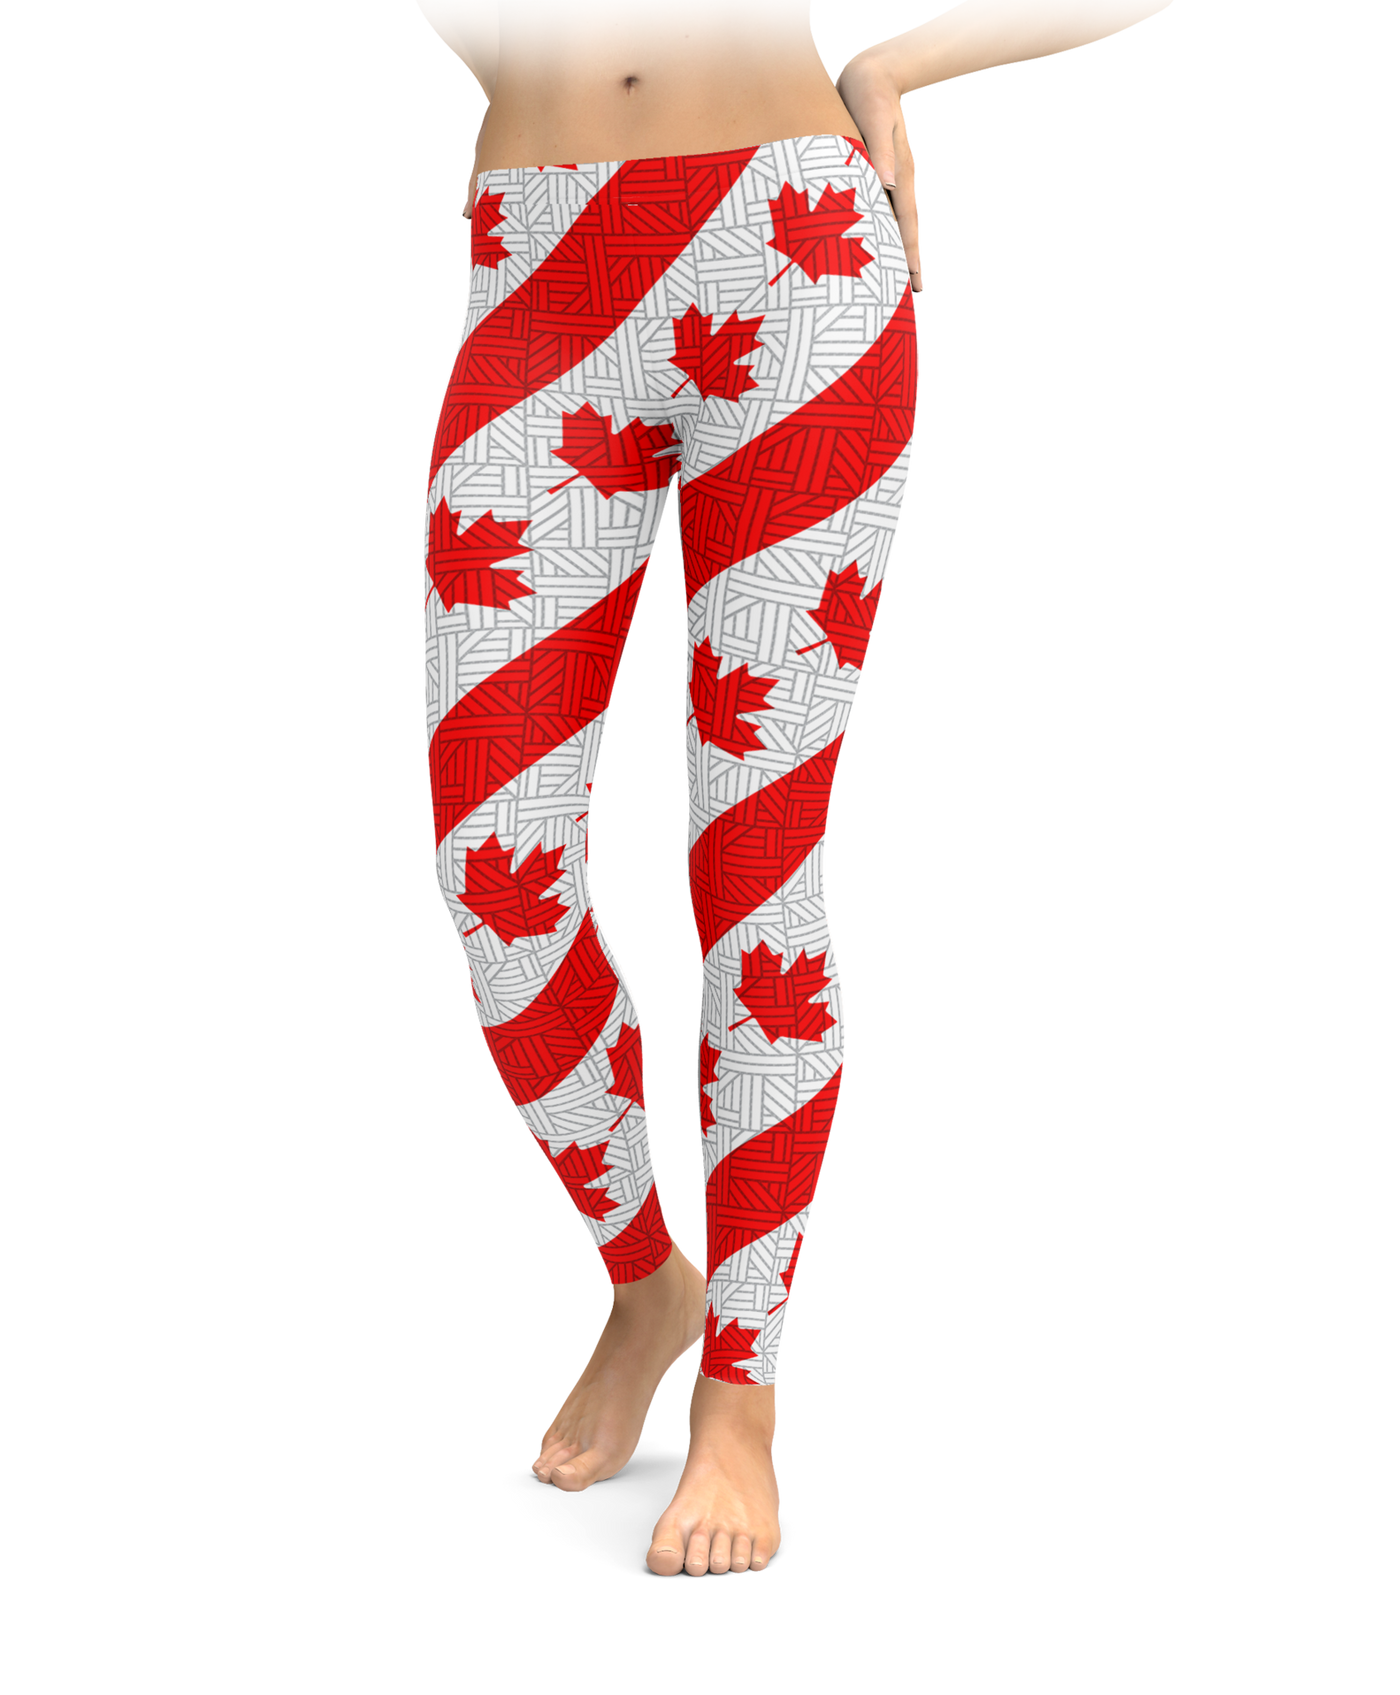 Crochet Canadian Flag Leggings